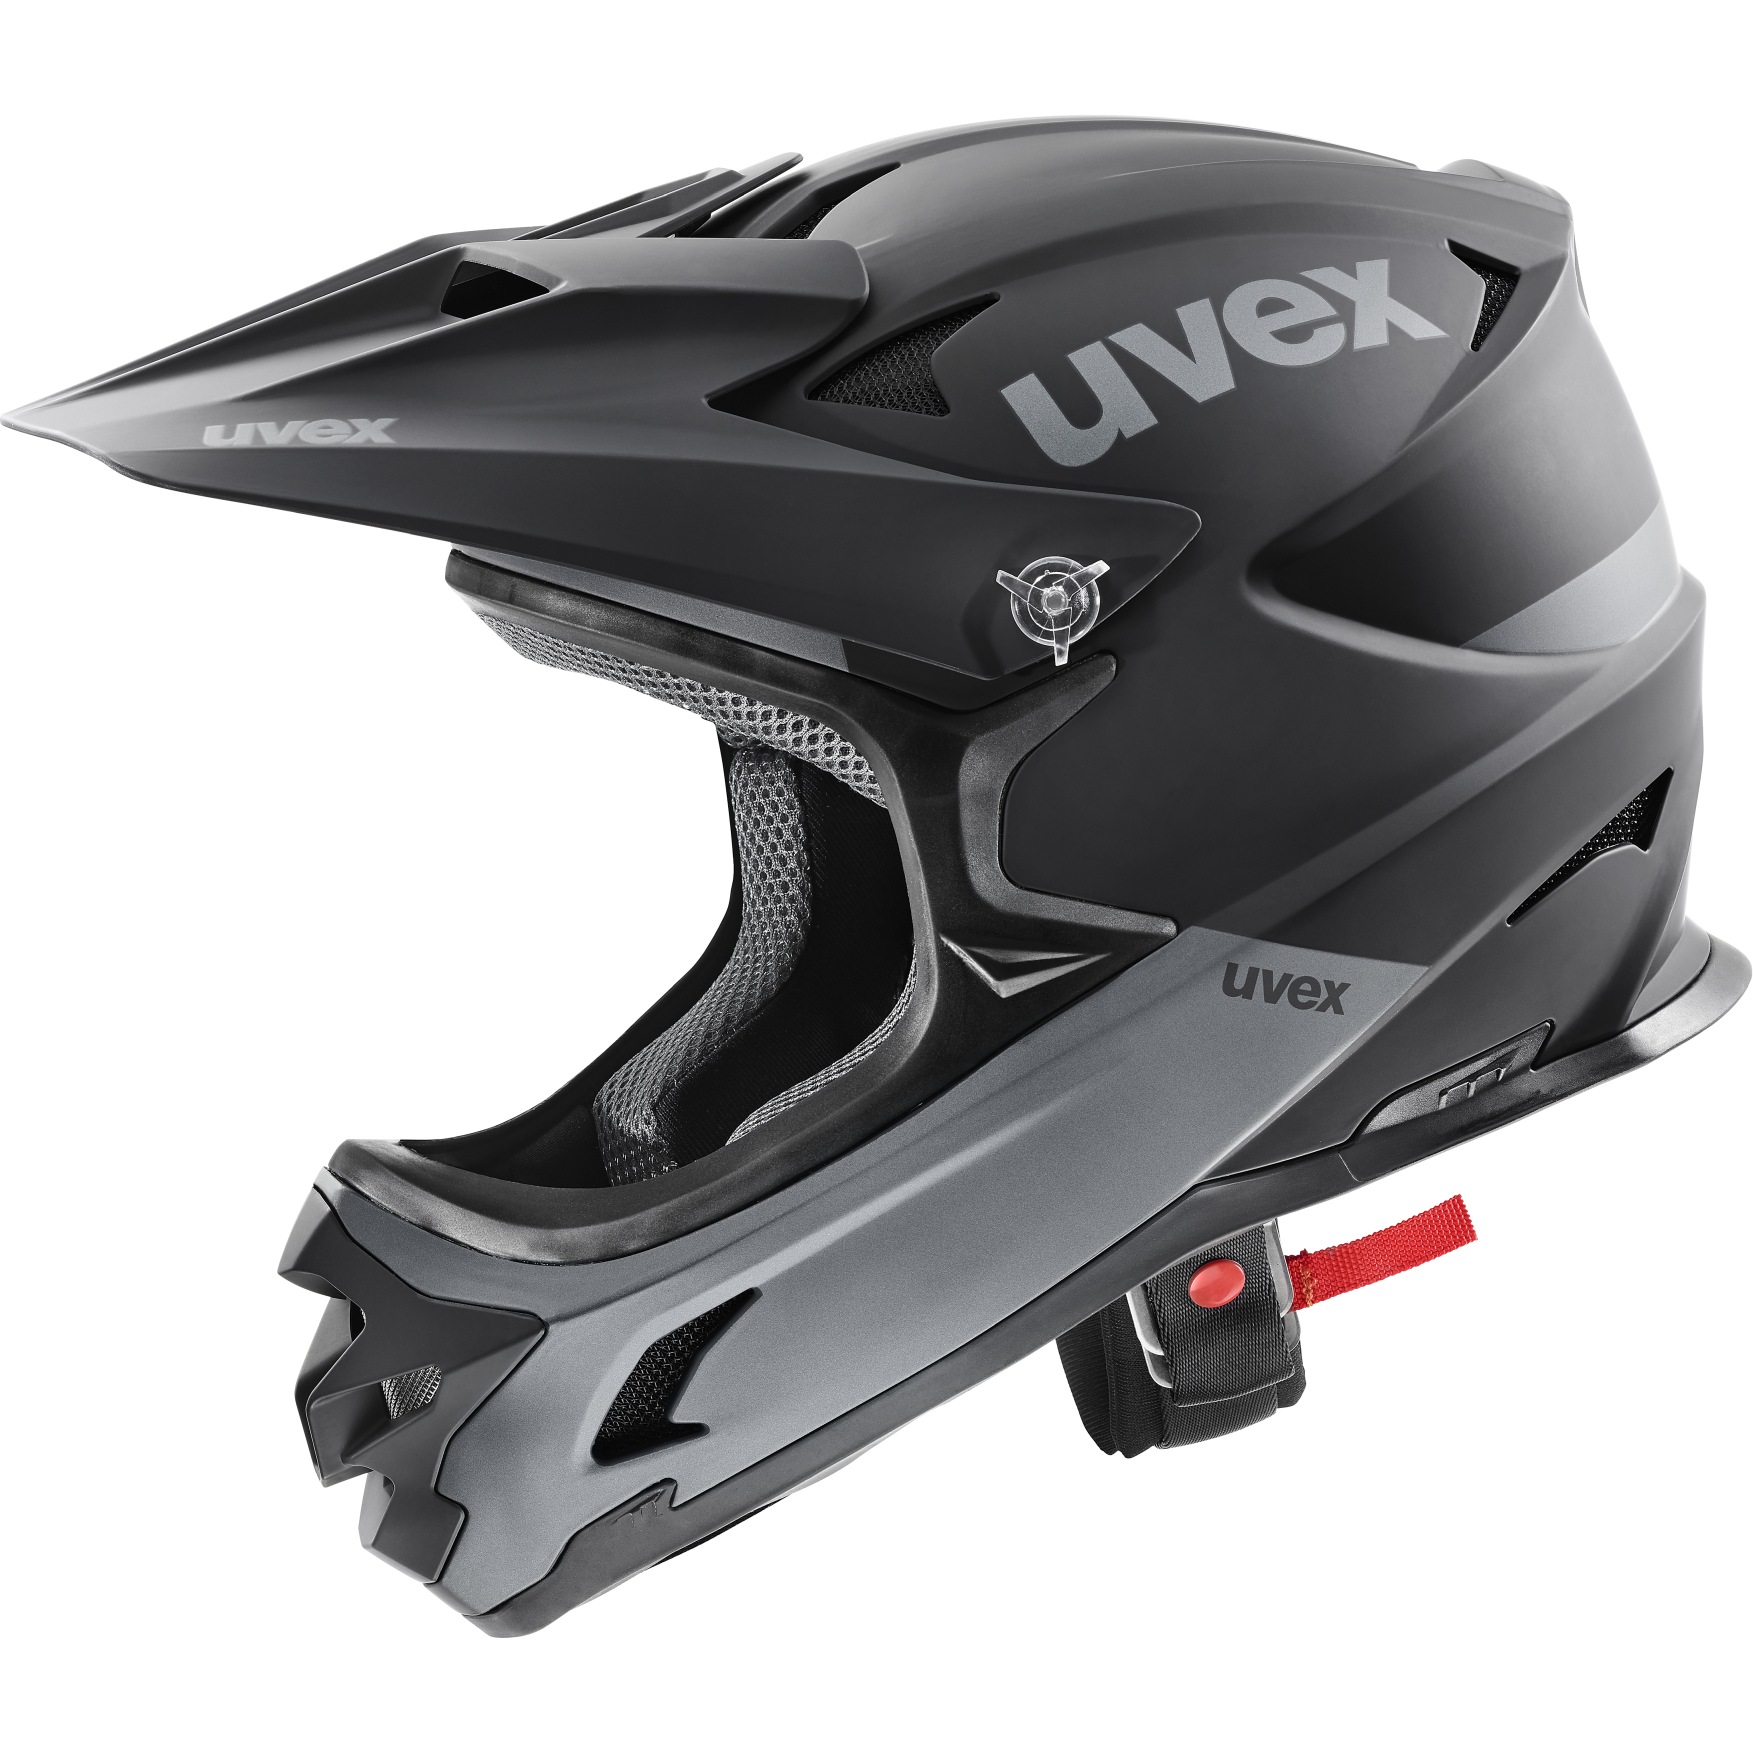 Produktbild von Uvex hlmt 10 bike Helm - black-grey matt